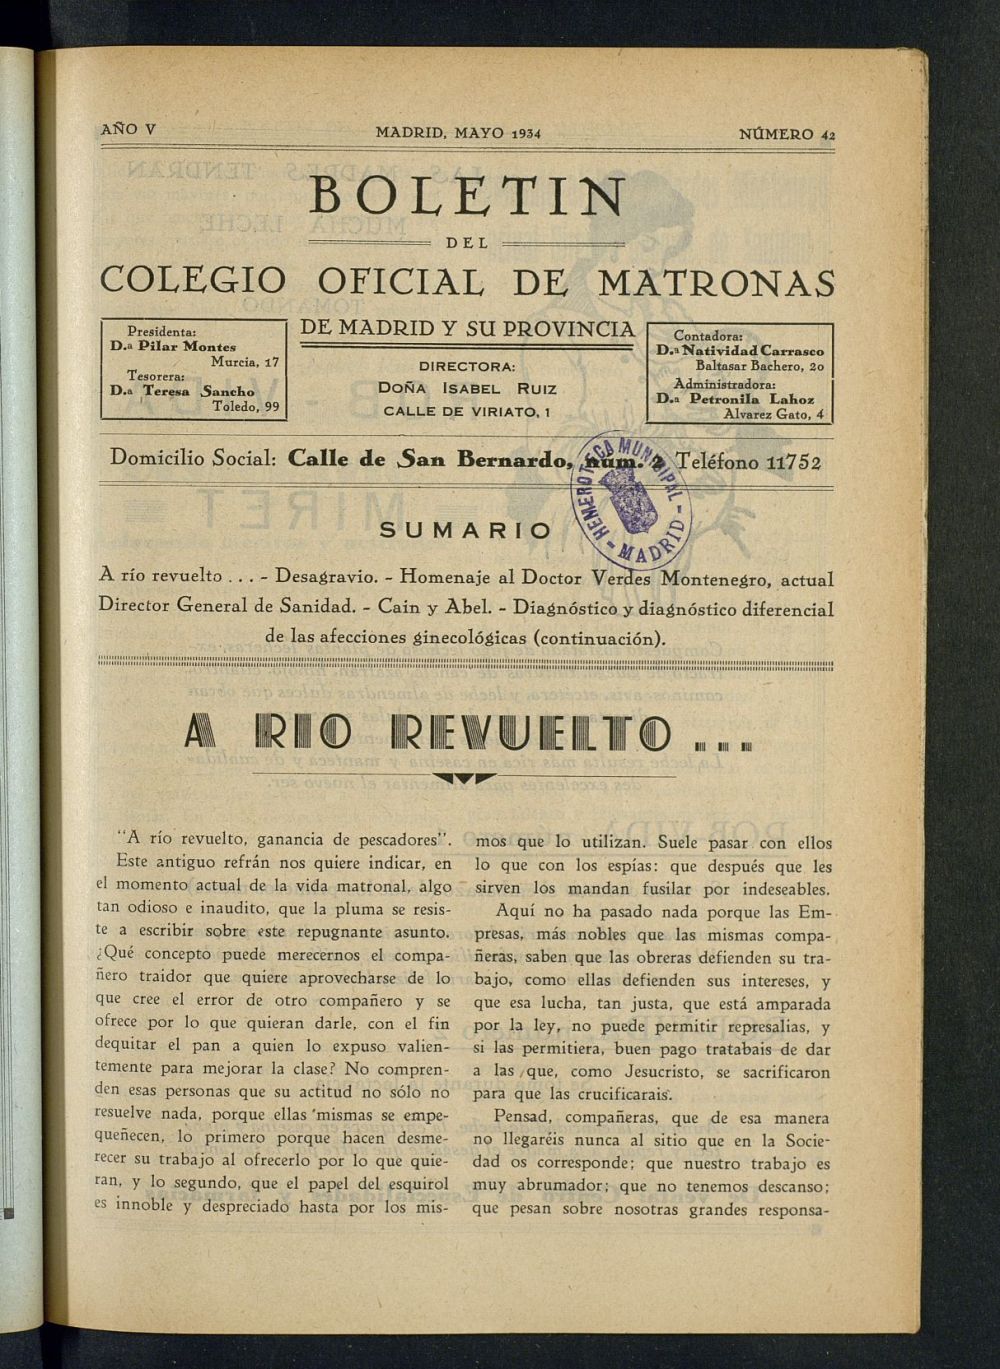 Boletn del Colegio Oficial de Matronas de Madrid y su Provincia de mayo de 1934